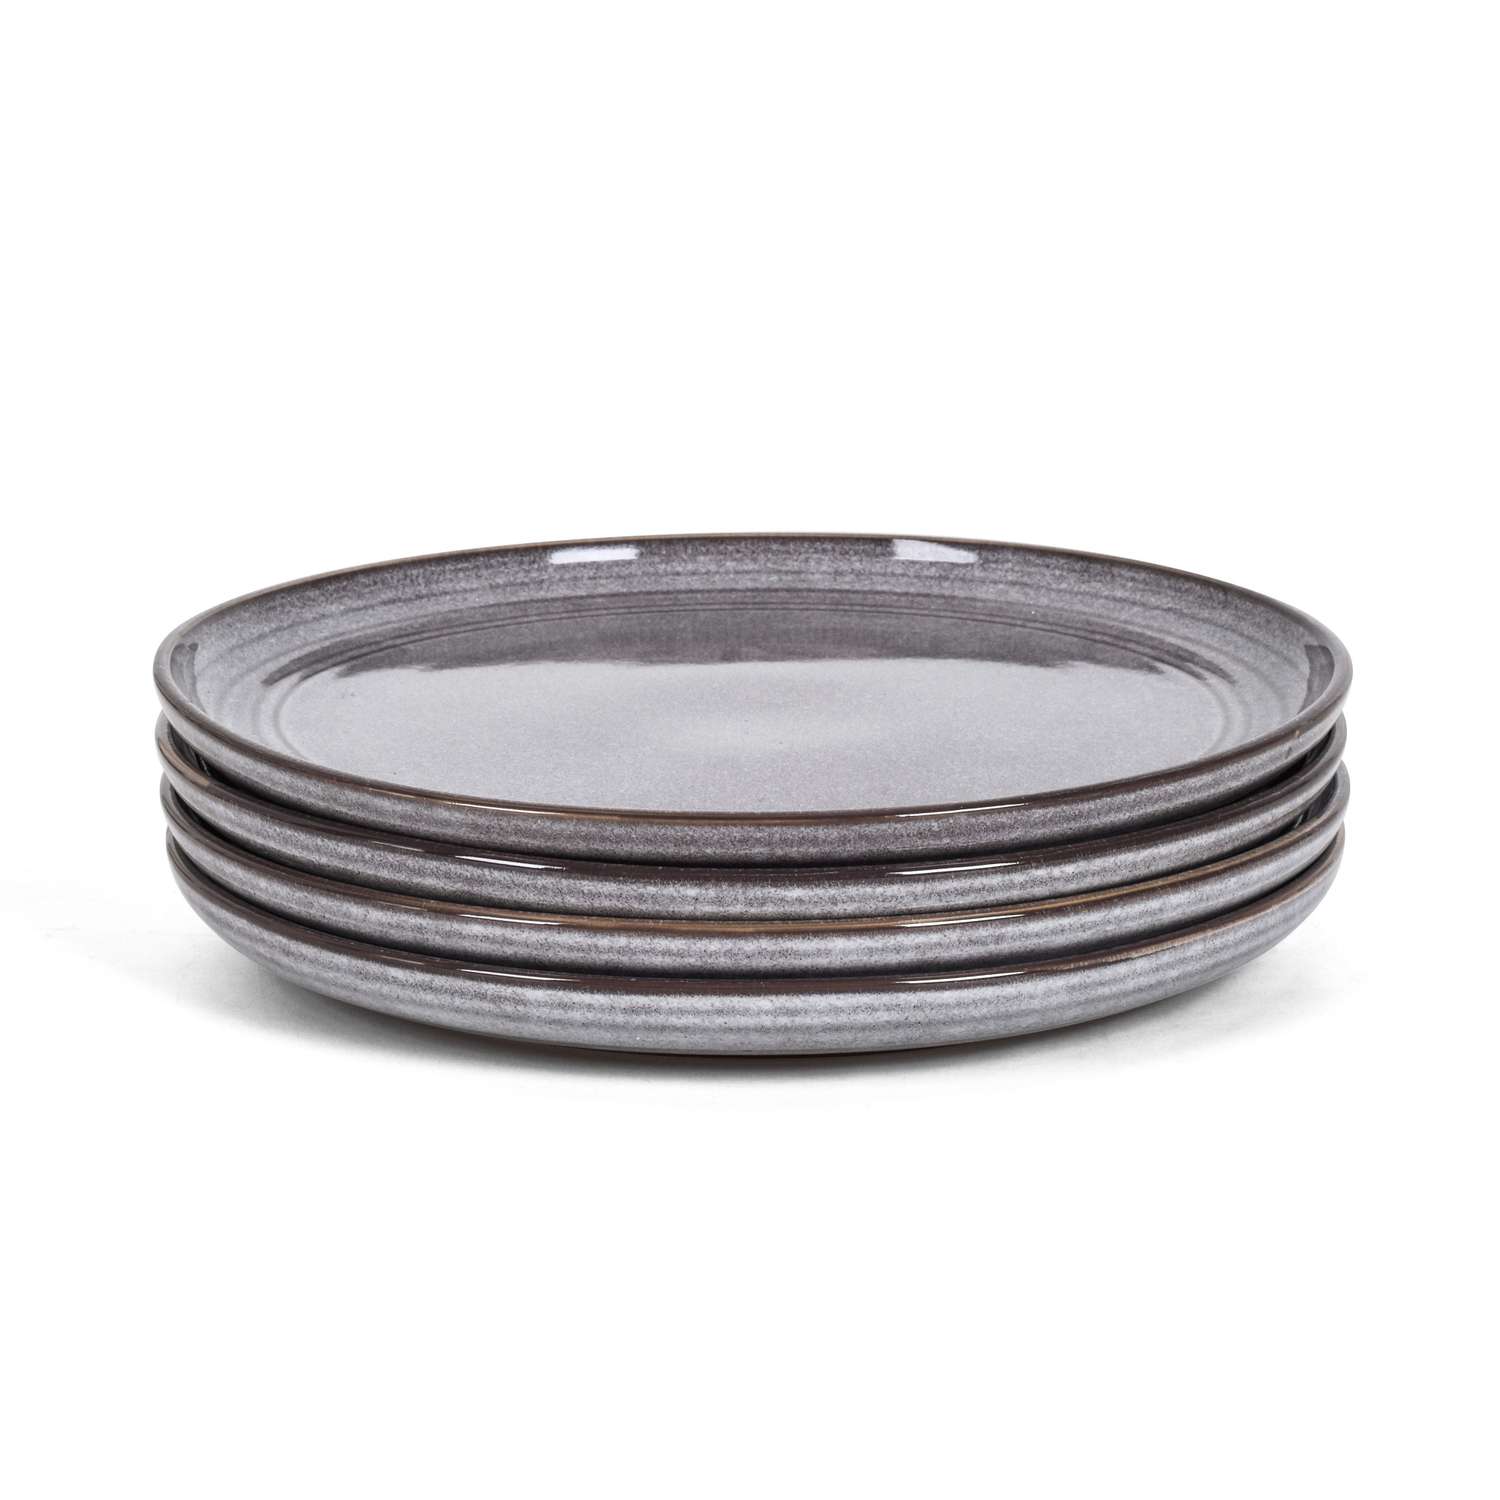 Набор посуды Arya Home Collection Stoneware тарелки обеденные 27 см 4 шт. - фото 2